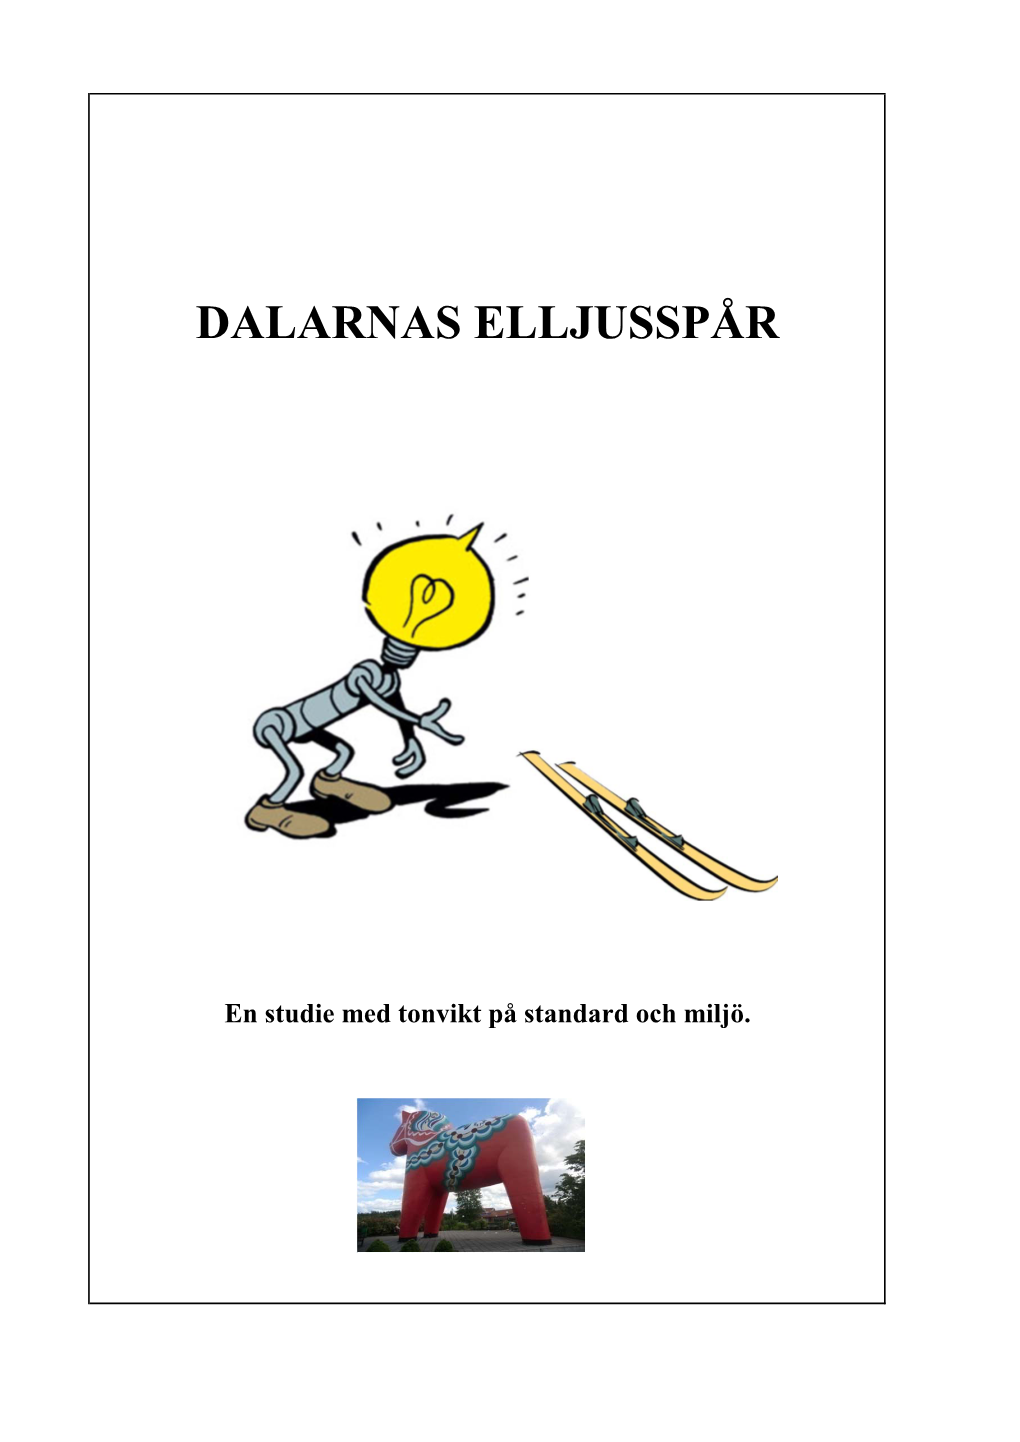 2012 Elljusspår I Dalarna